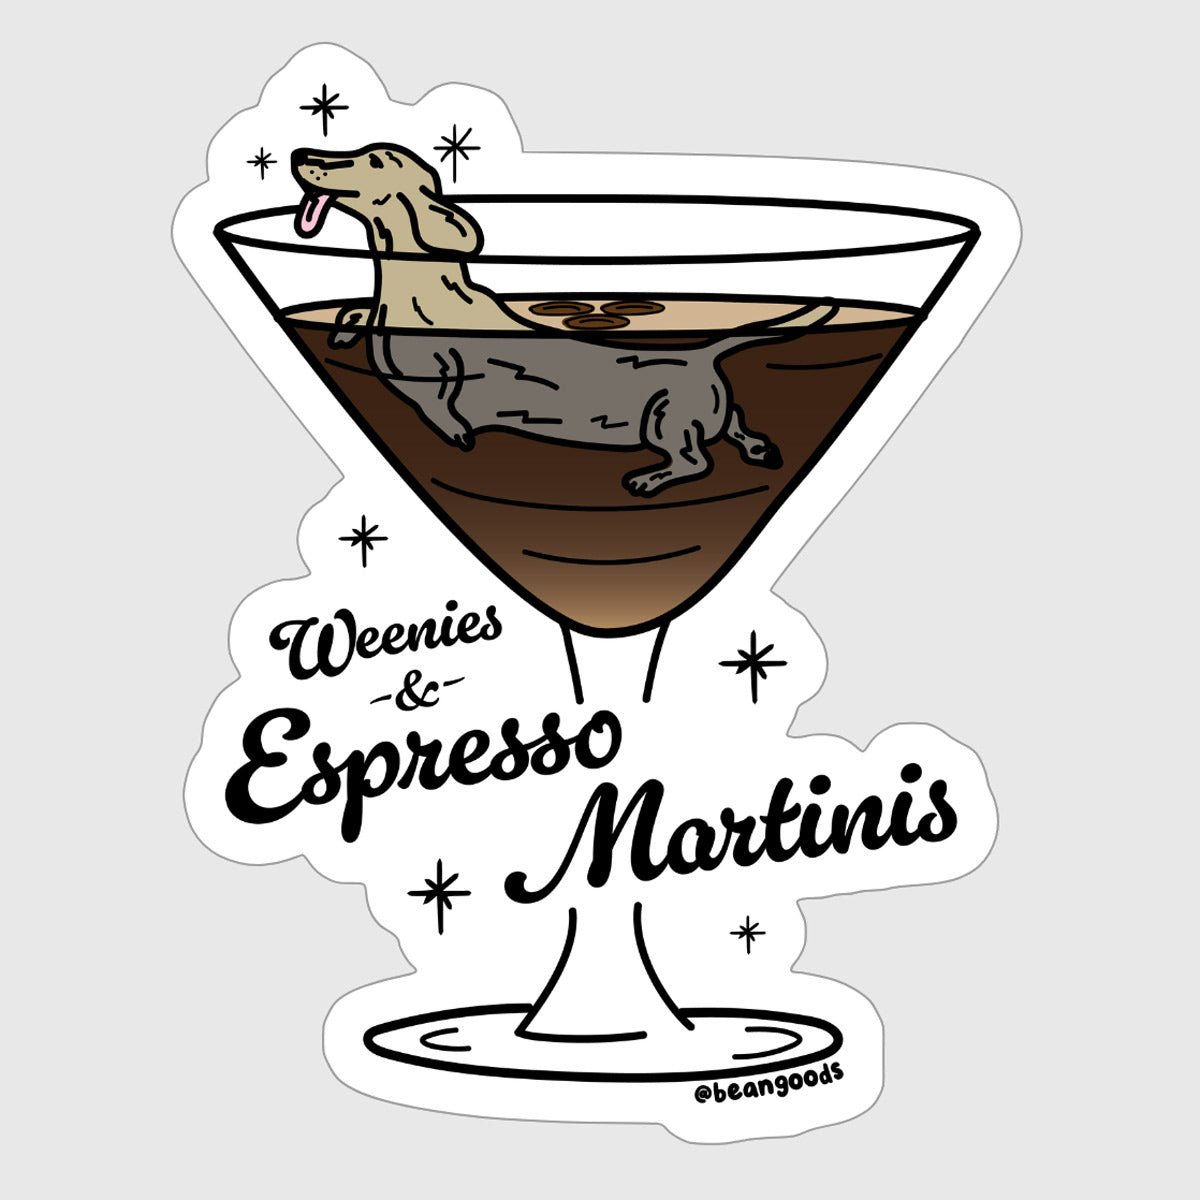 weenies & espresso martinis sticker - bean goods